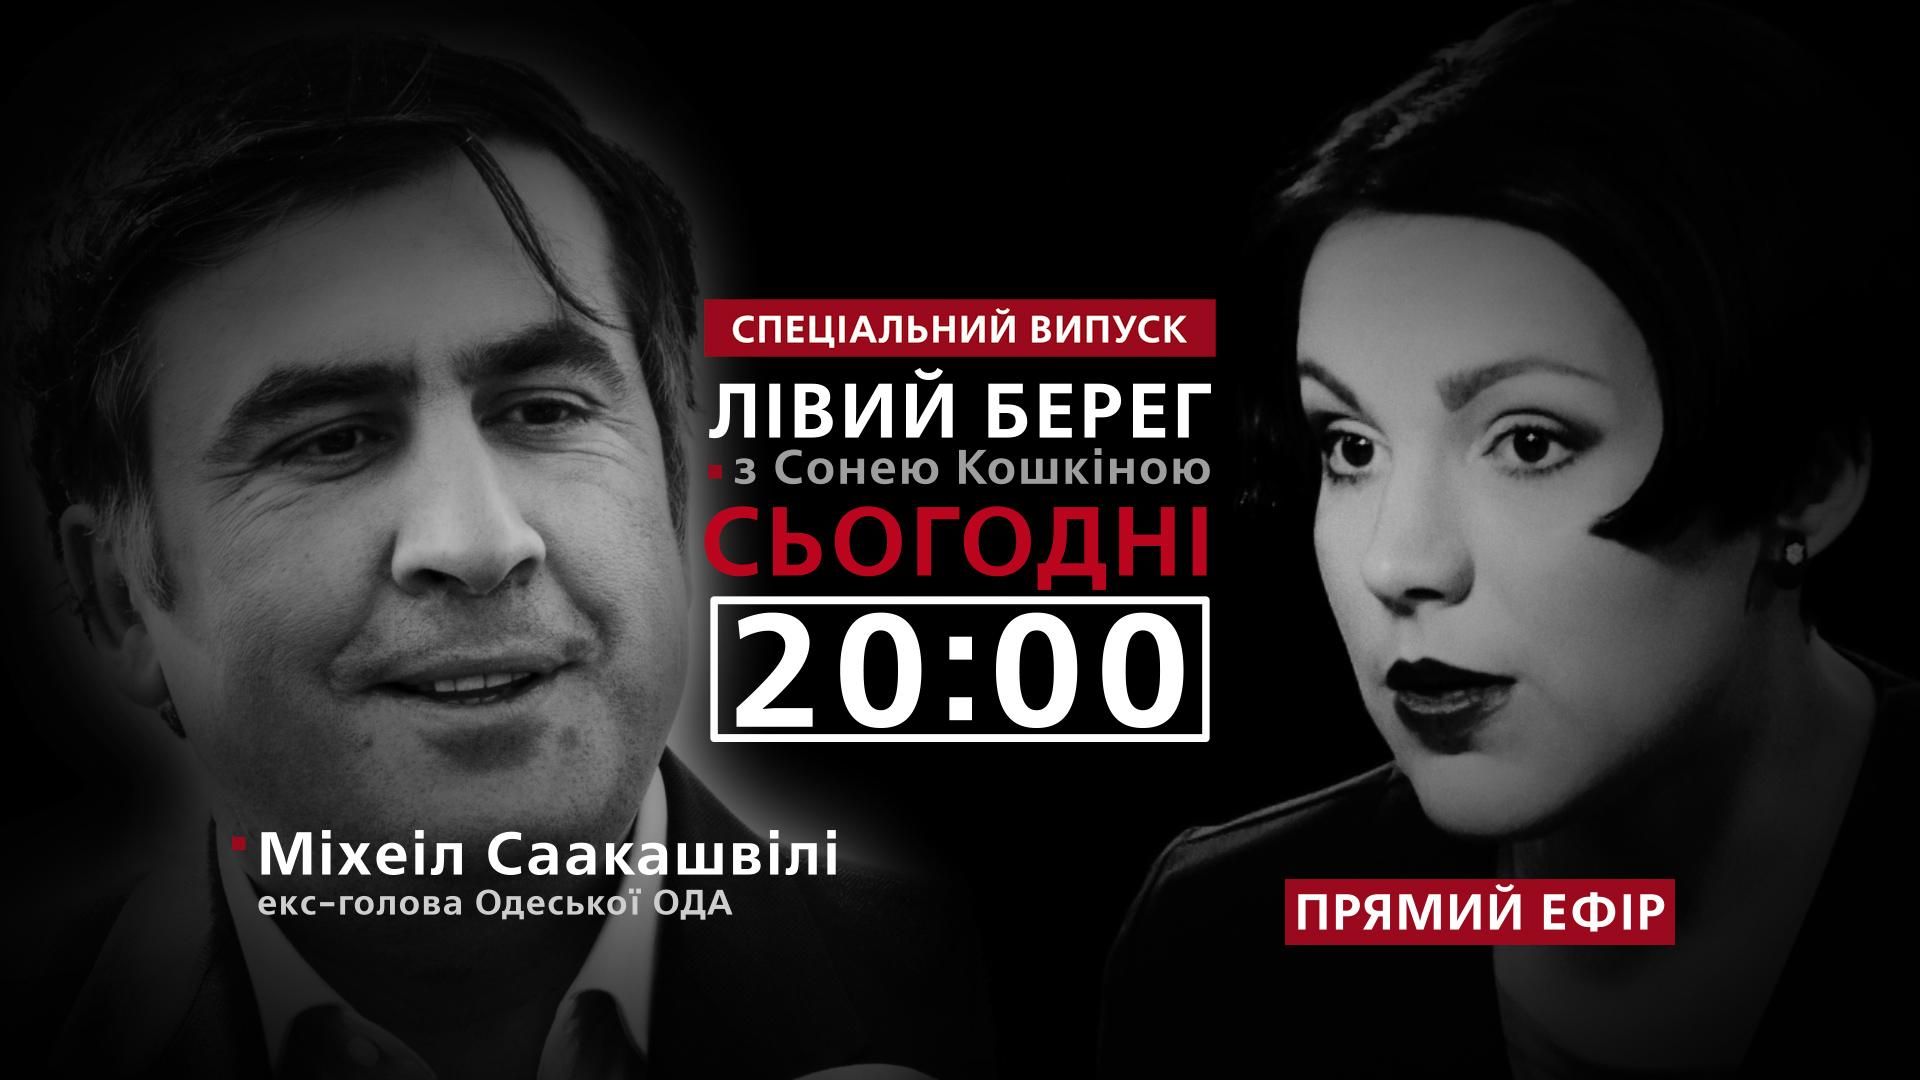 Саакашвили о новой политсиле и Порошенко – смотрите в программе "Левый берег" с Соней Кошкиной